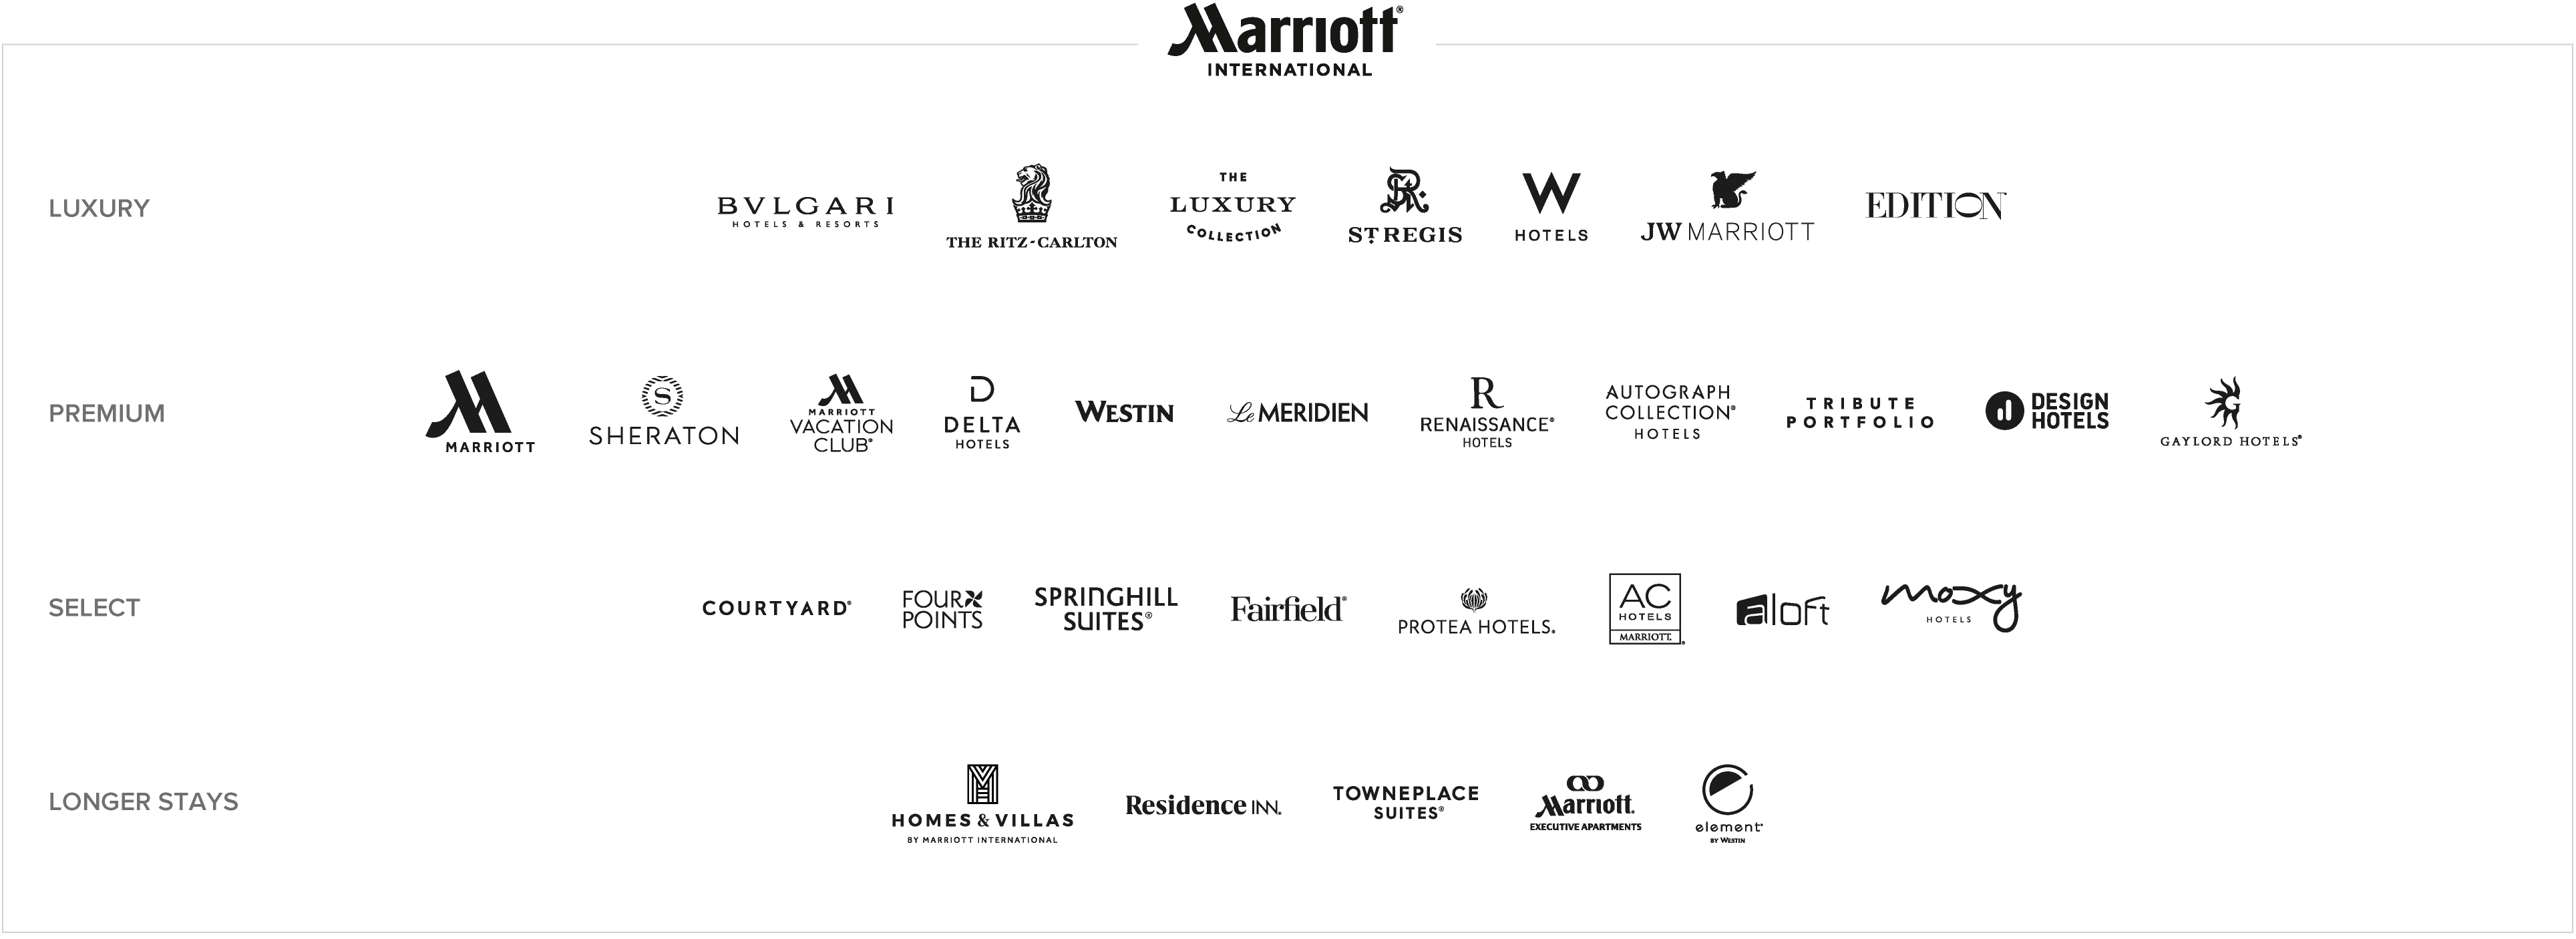 Presentación de todas las marcas de Marriott